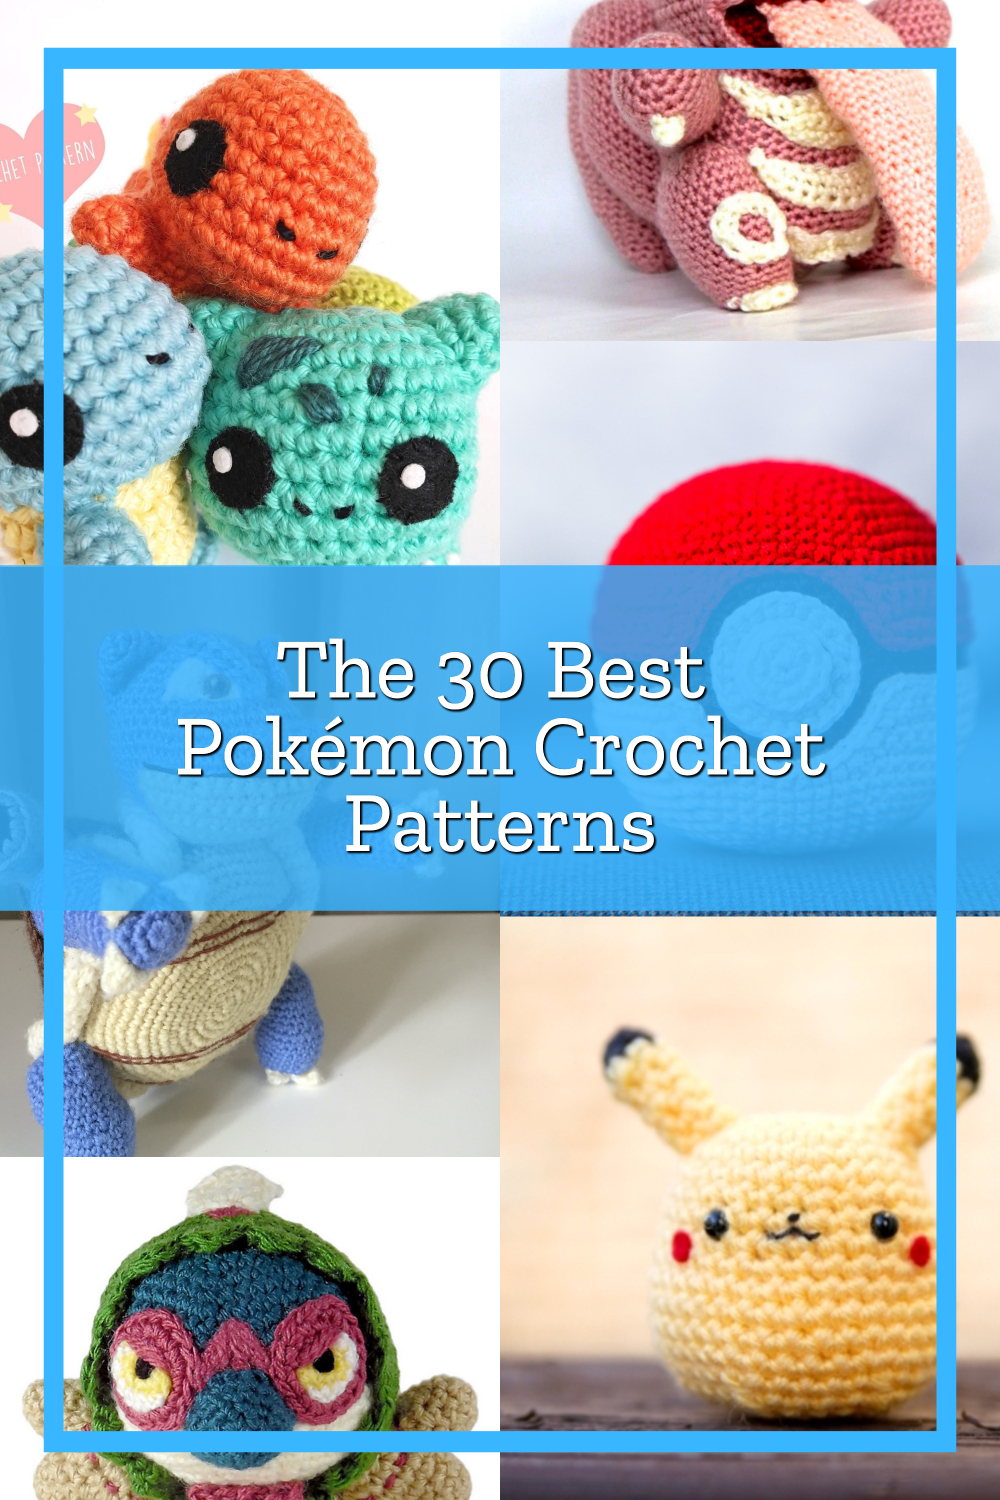 Pokémon Crochet Free - Pokémon Crochet Free Pattern